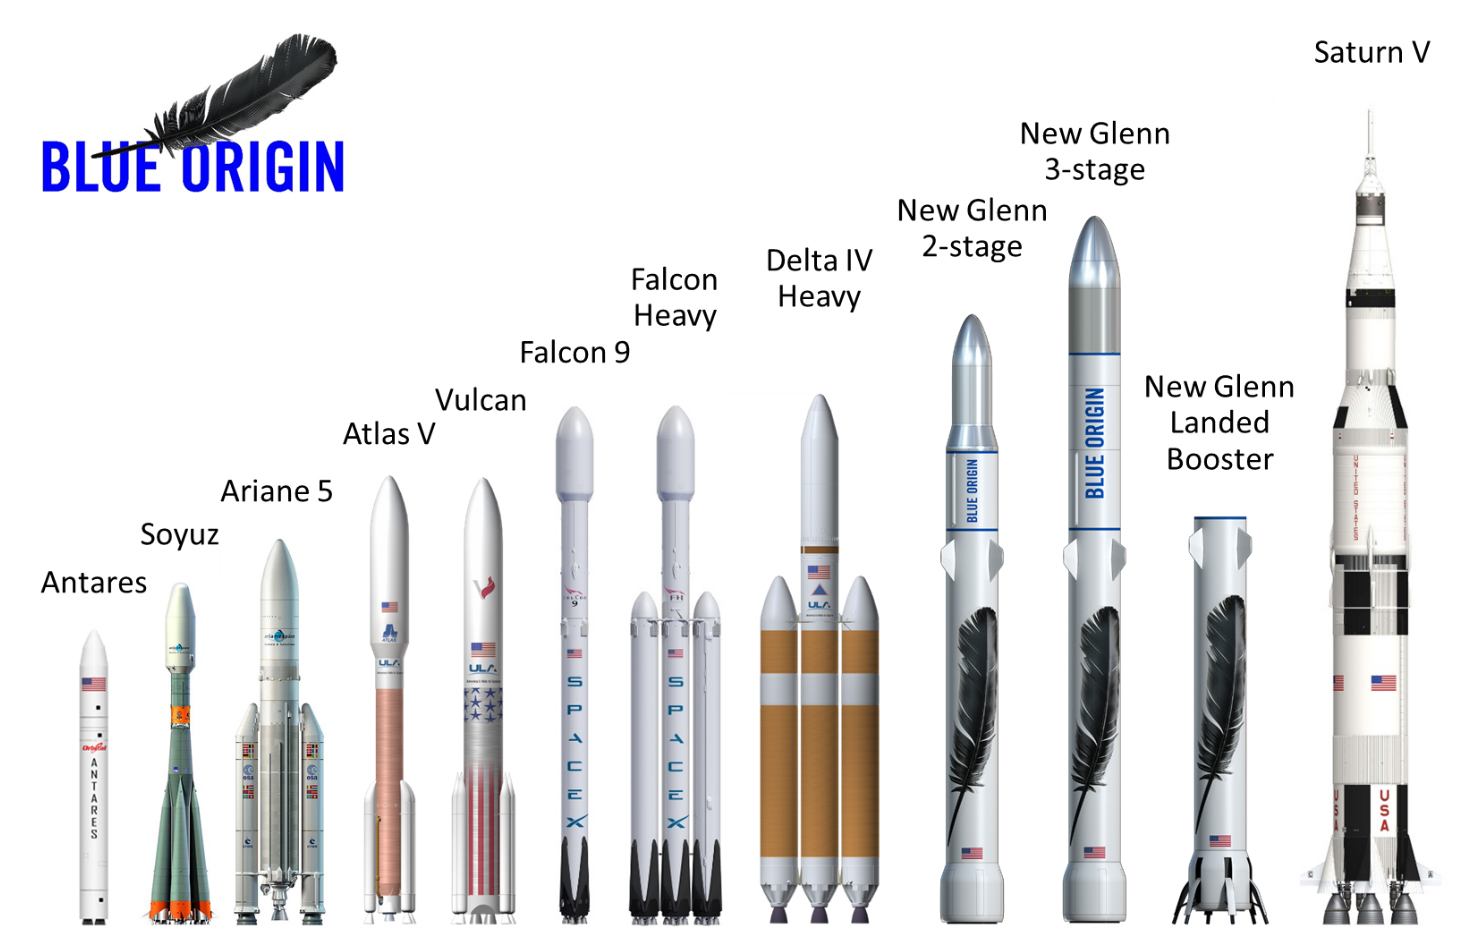 nouvelle fusée New Glenn New-glenn-large2